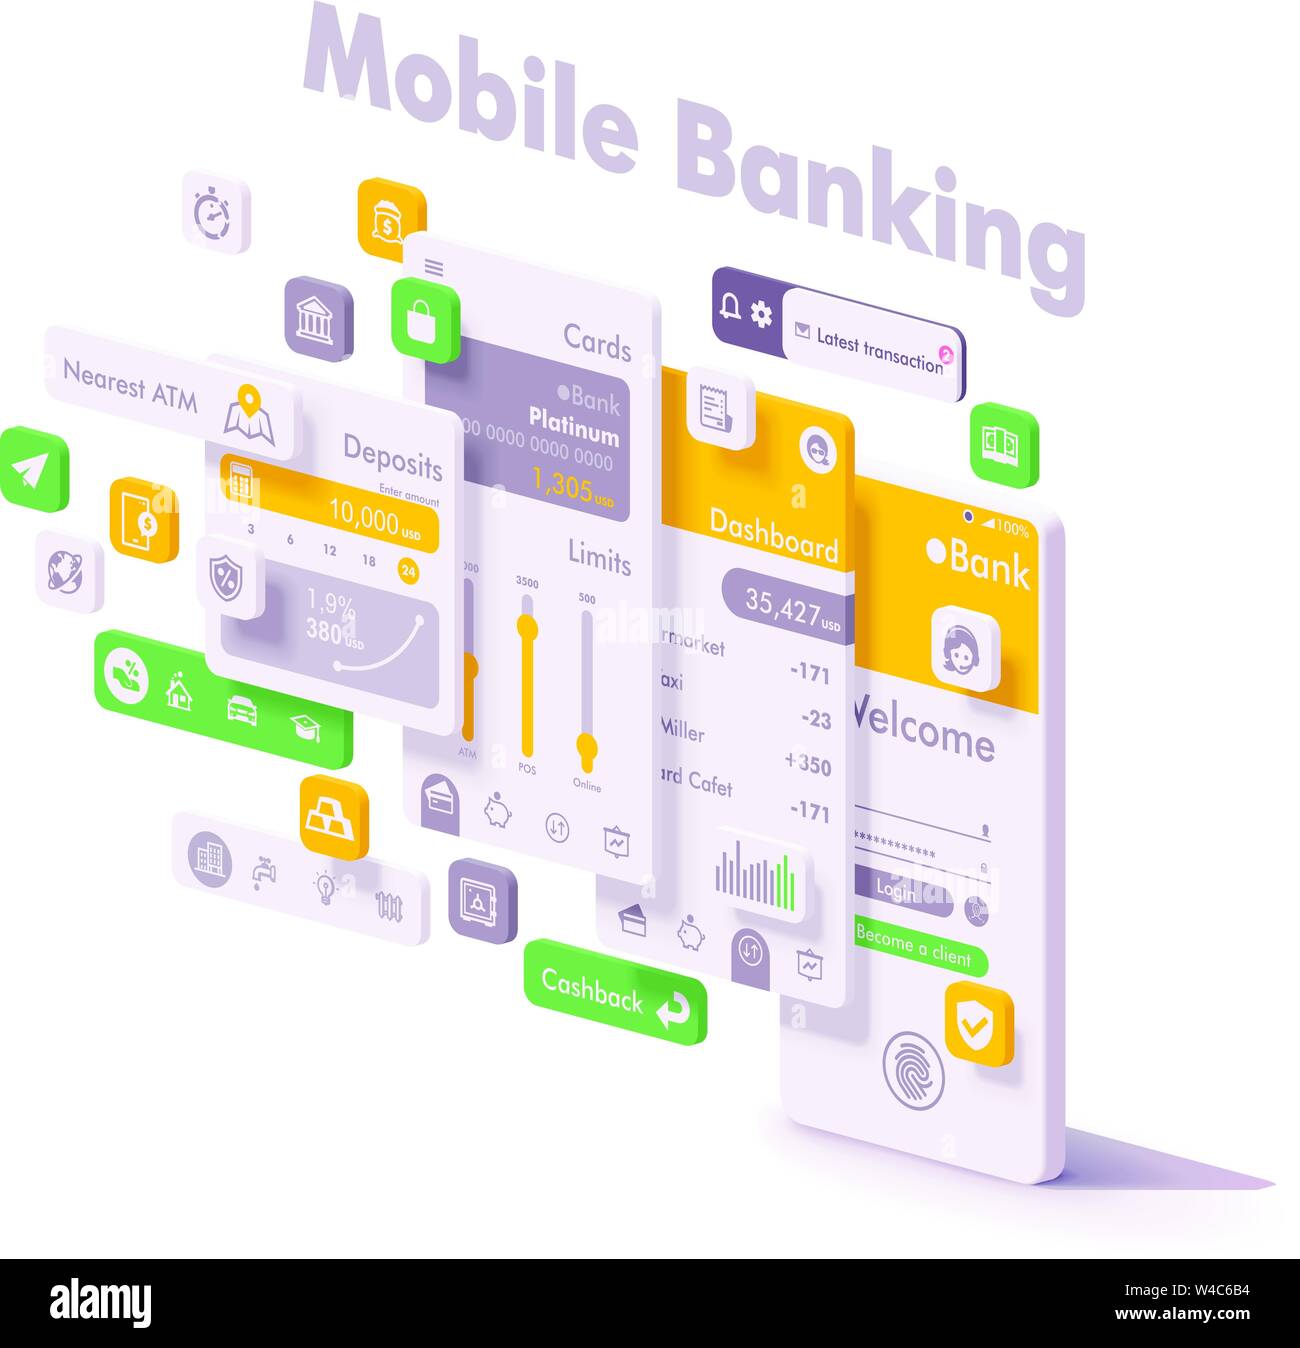 Vettore internet mobile banking app concept Illustrazione Vettoriale